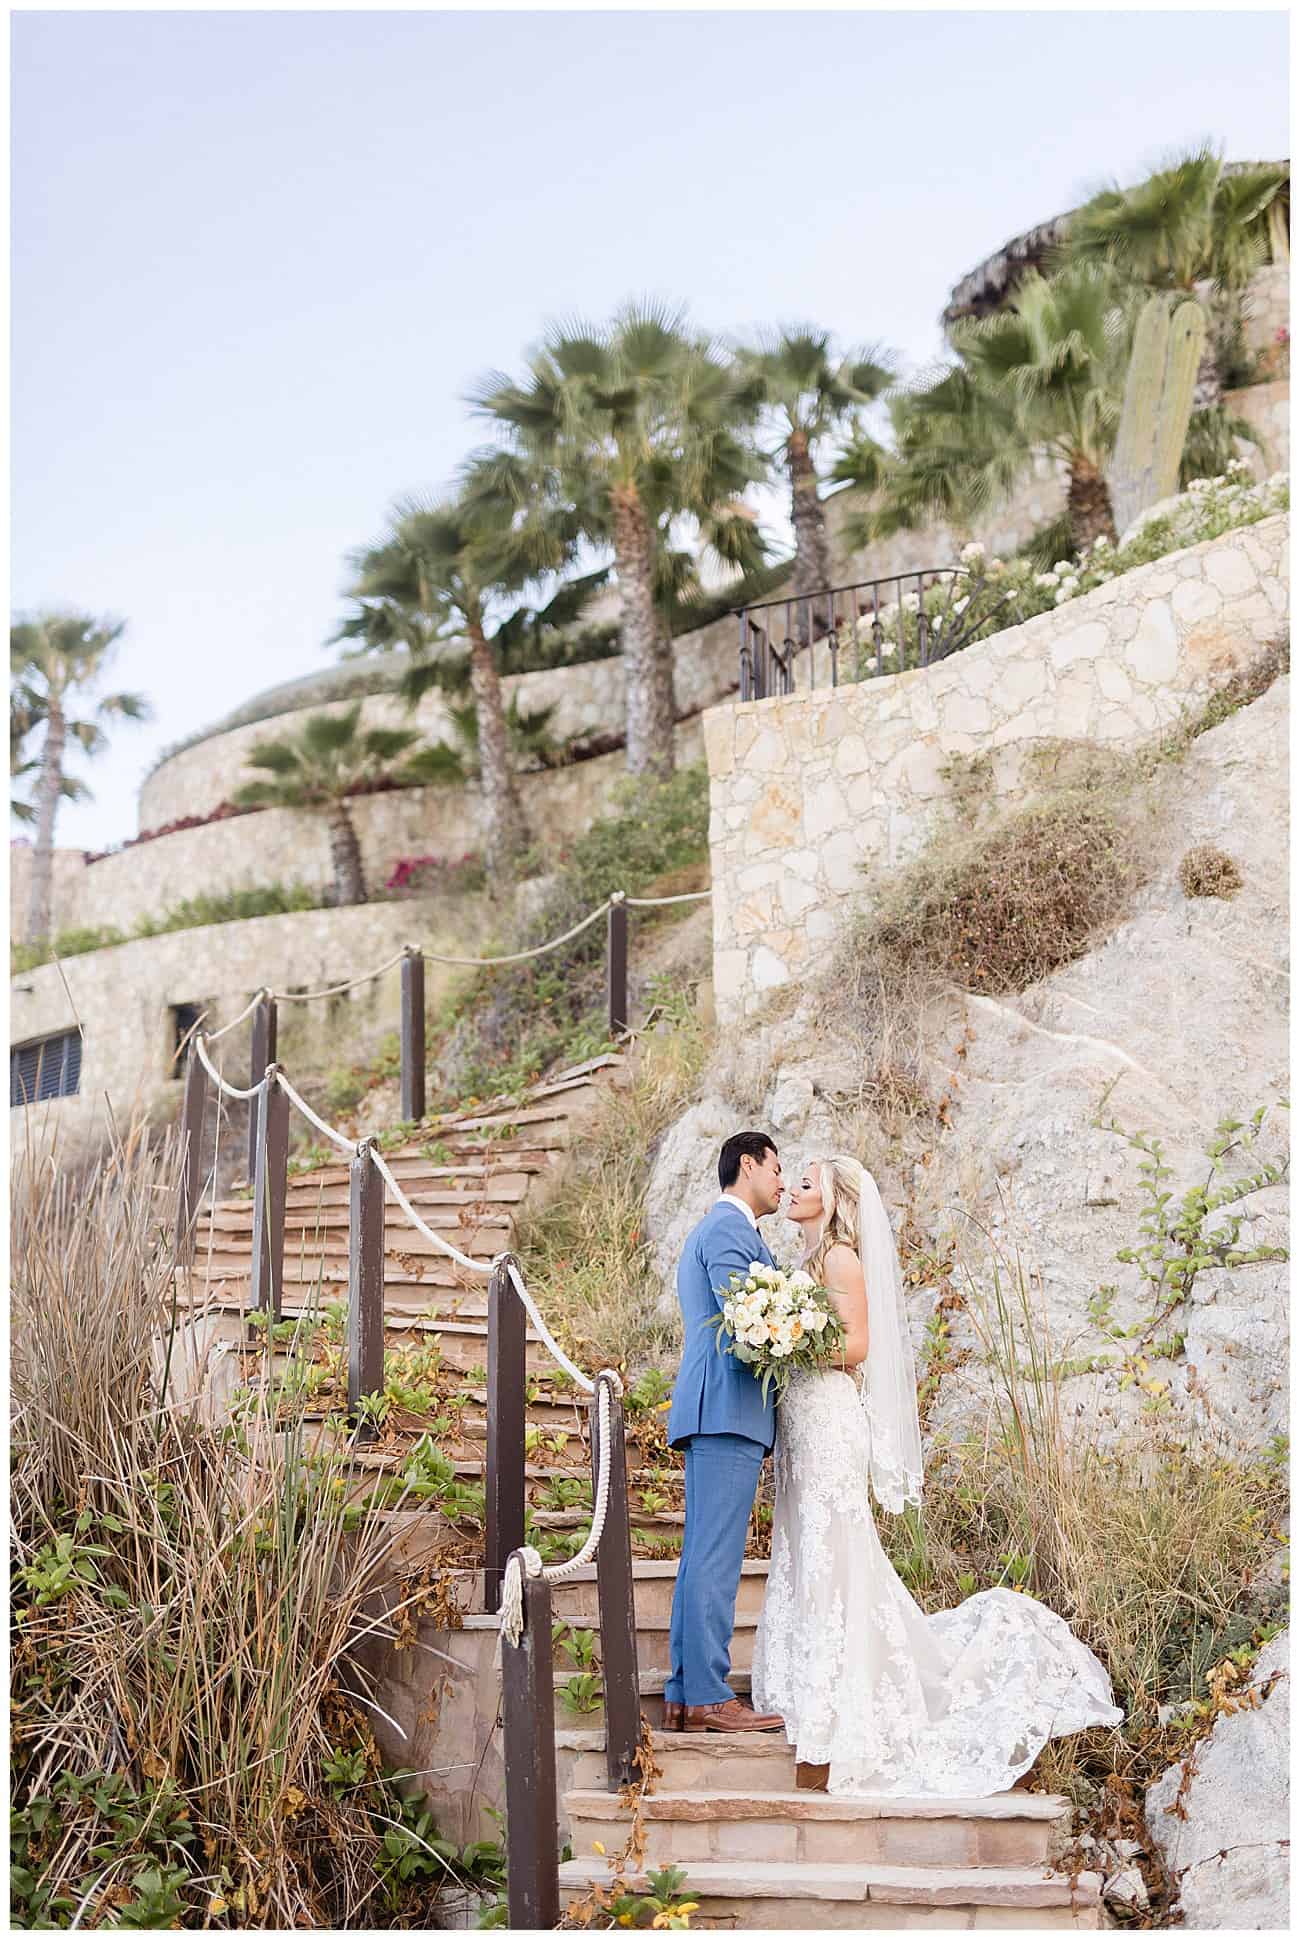 ?pp route=%2Fimage resize&path=nBnauczMyEzX5hGchJ3ZvR3boBXLu92ckJXYoNWay1SYyF2ctIXZoBXYyd2b09Gaw1yZulGZkV2dt8mYhN2L0N3bw1SN3kzNtAjMvgDMvkTMwIjf&width=768 - A Blissful Wedding at Cabo Surf Hotel - Kristin & Jacob